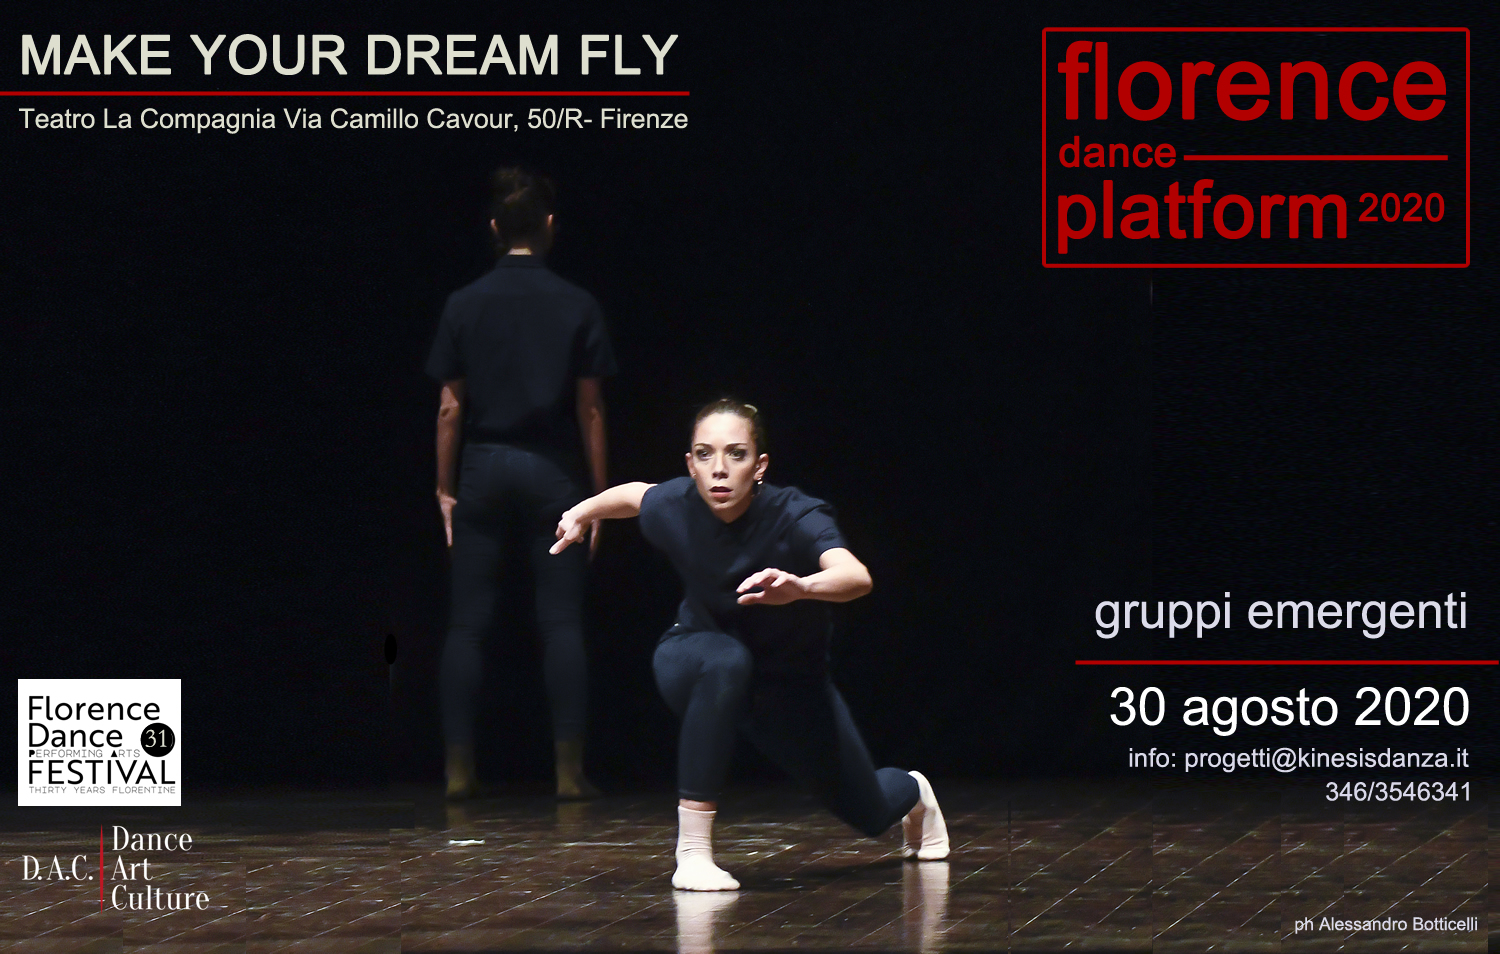 Florence Dance Platform 2020 - Florence Dance Festival